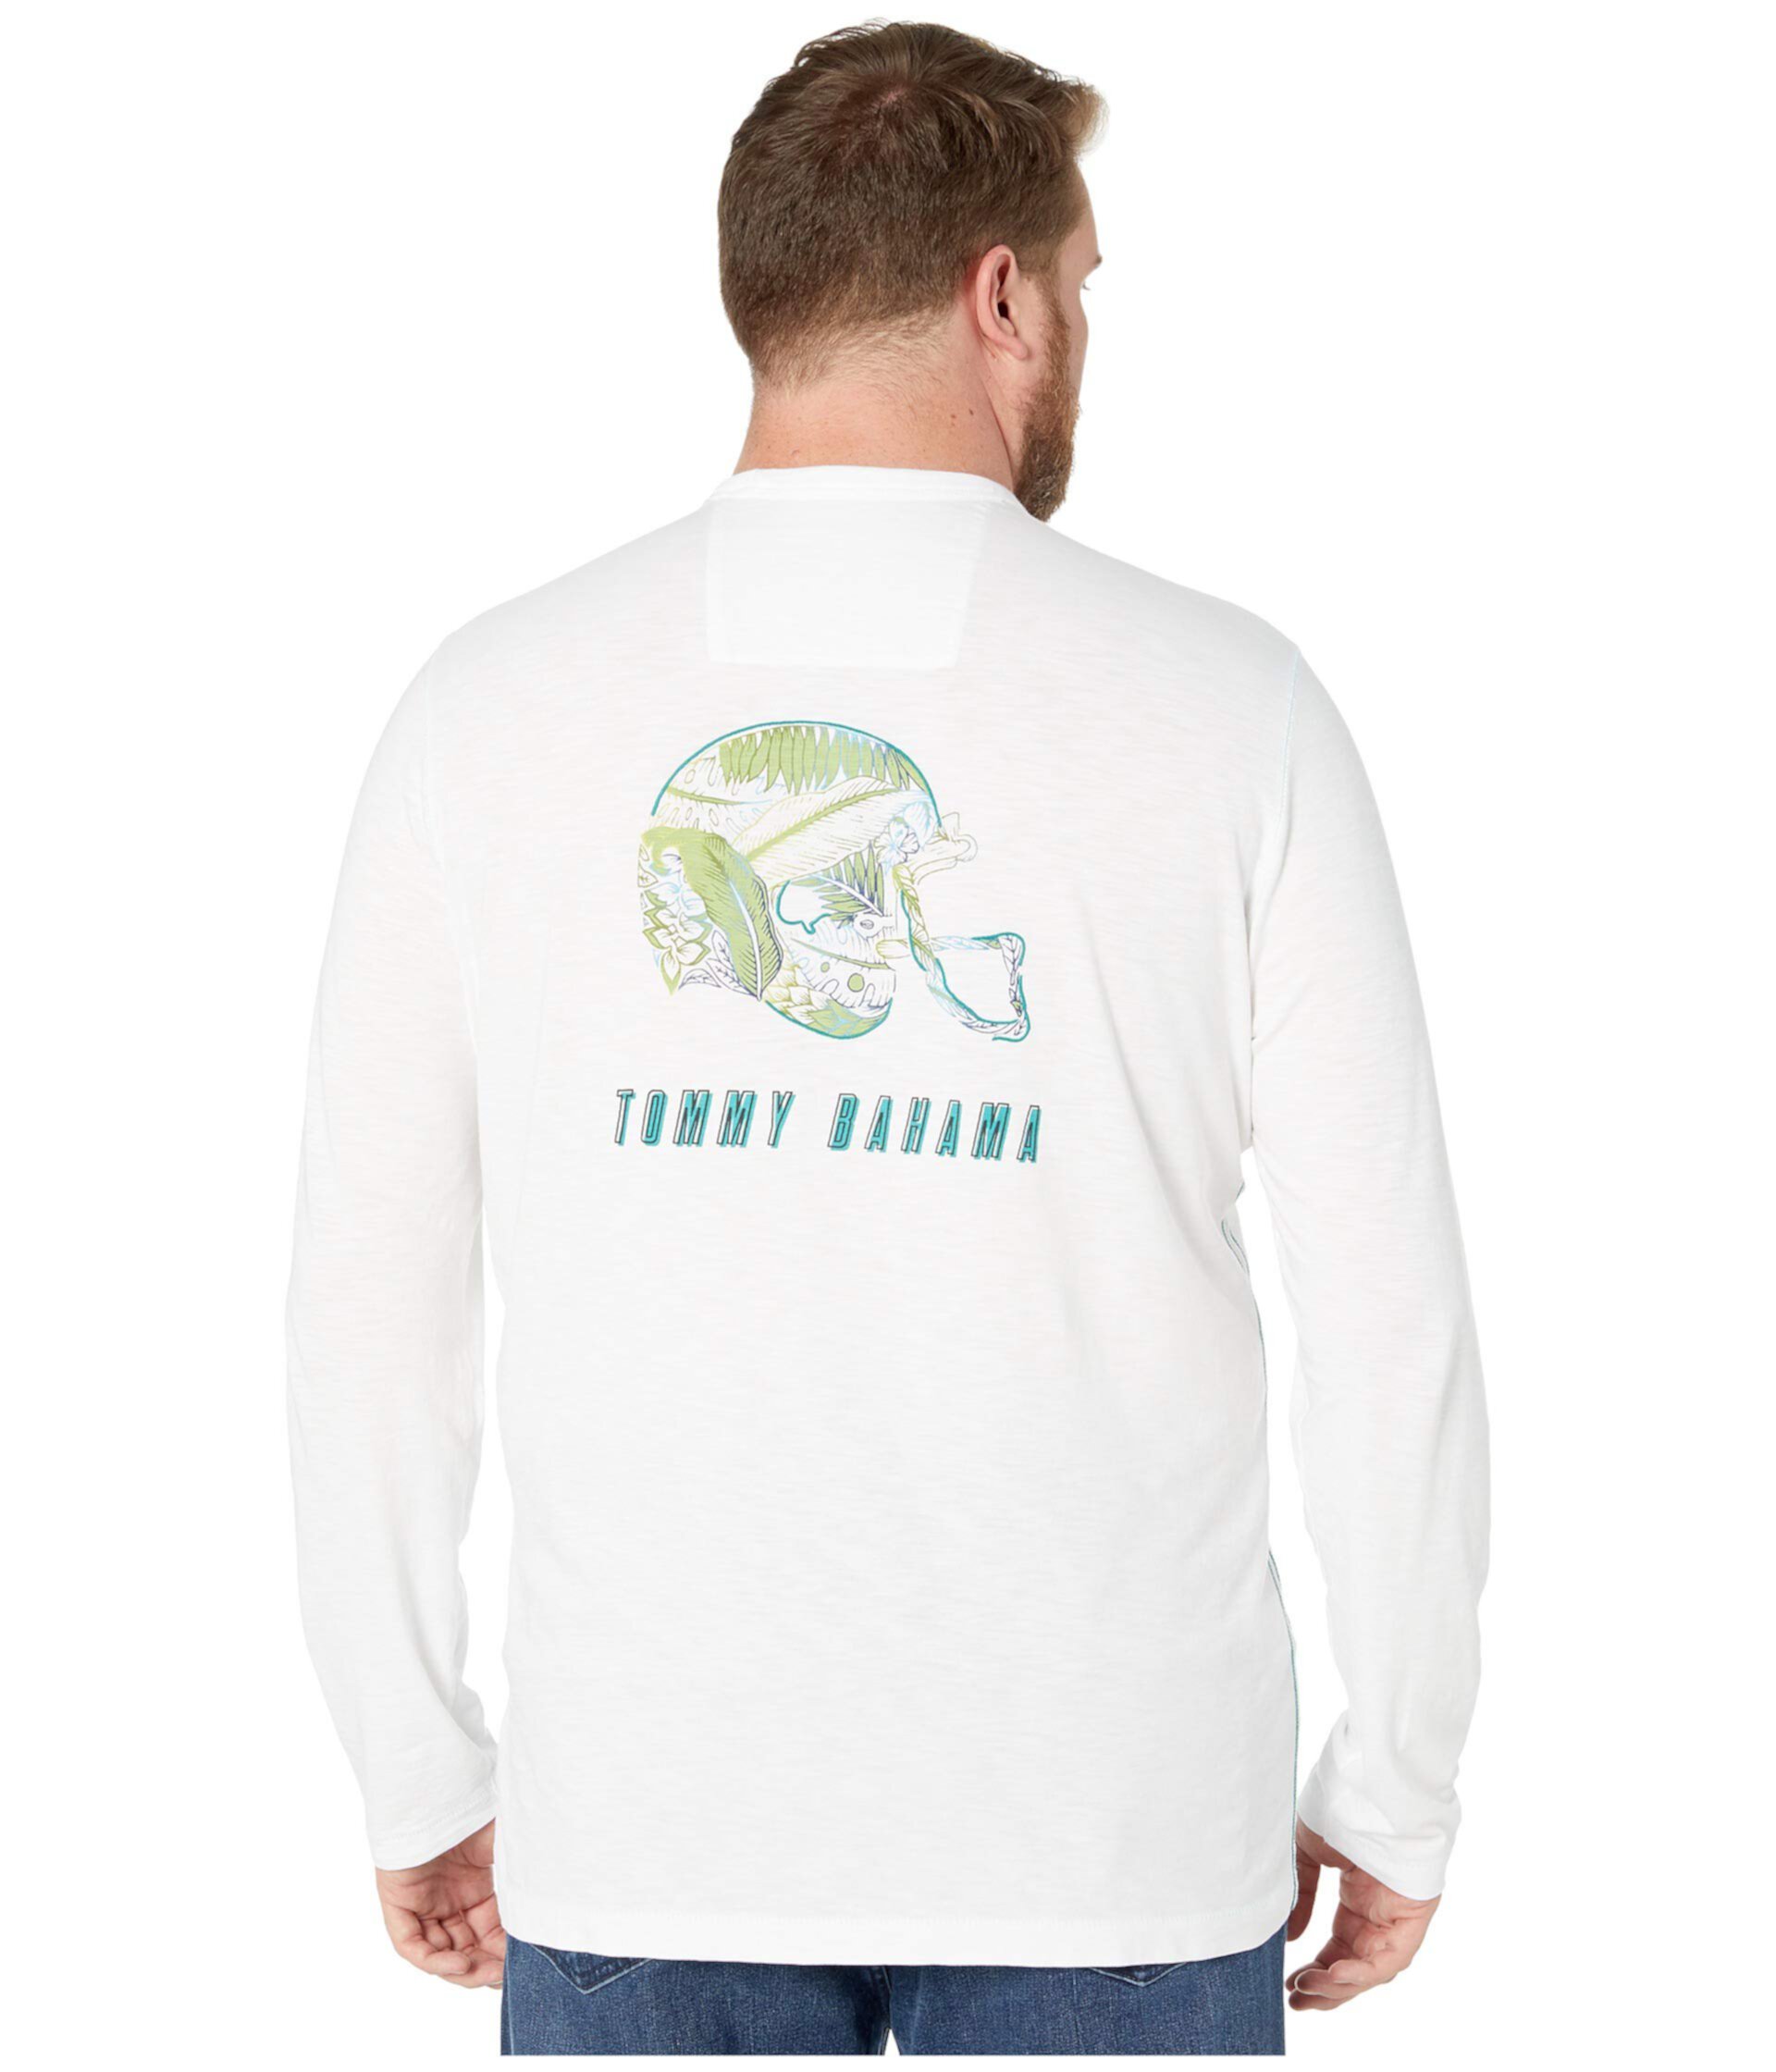 Большая и высокая футболка Frondball Lux Tommy Bahama Big & Tall